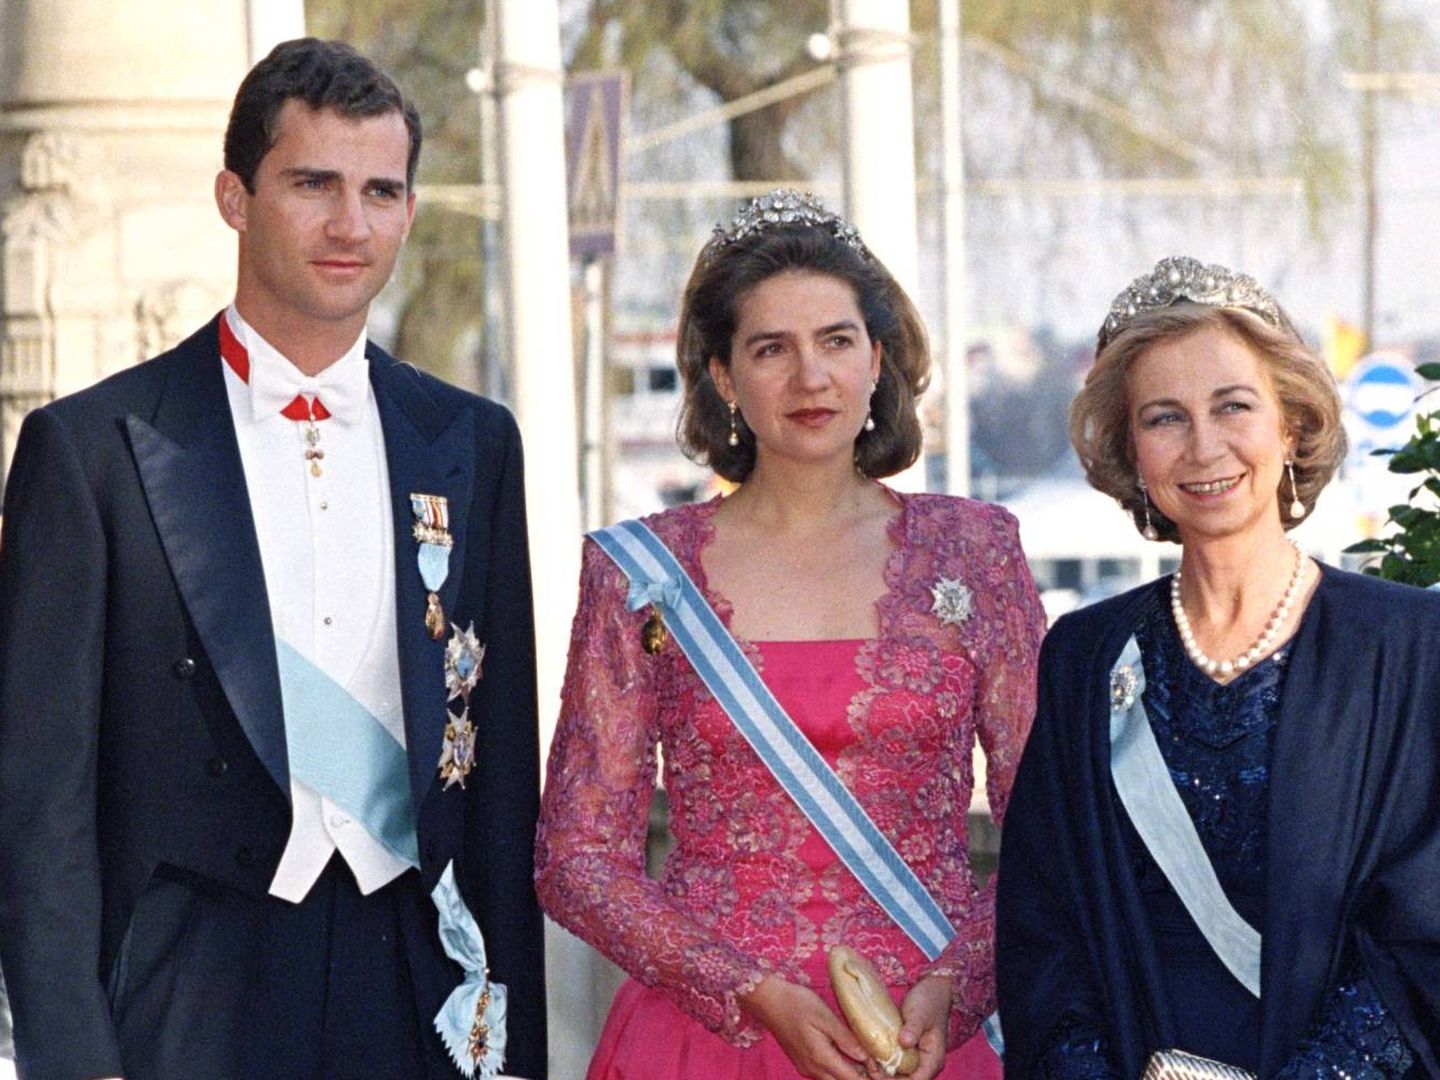 La infanta Cristina, con su vestido capote, Felipe y la reina Sofía. (Getty)